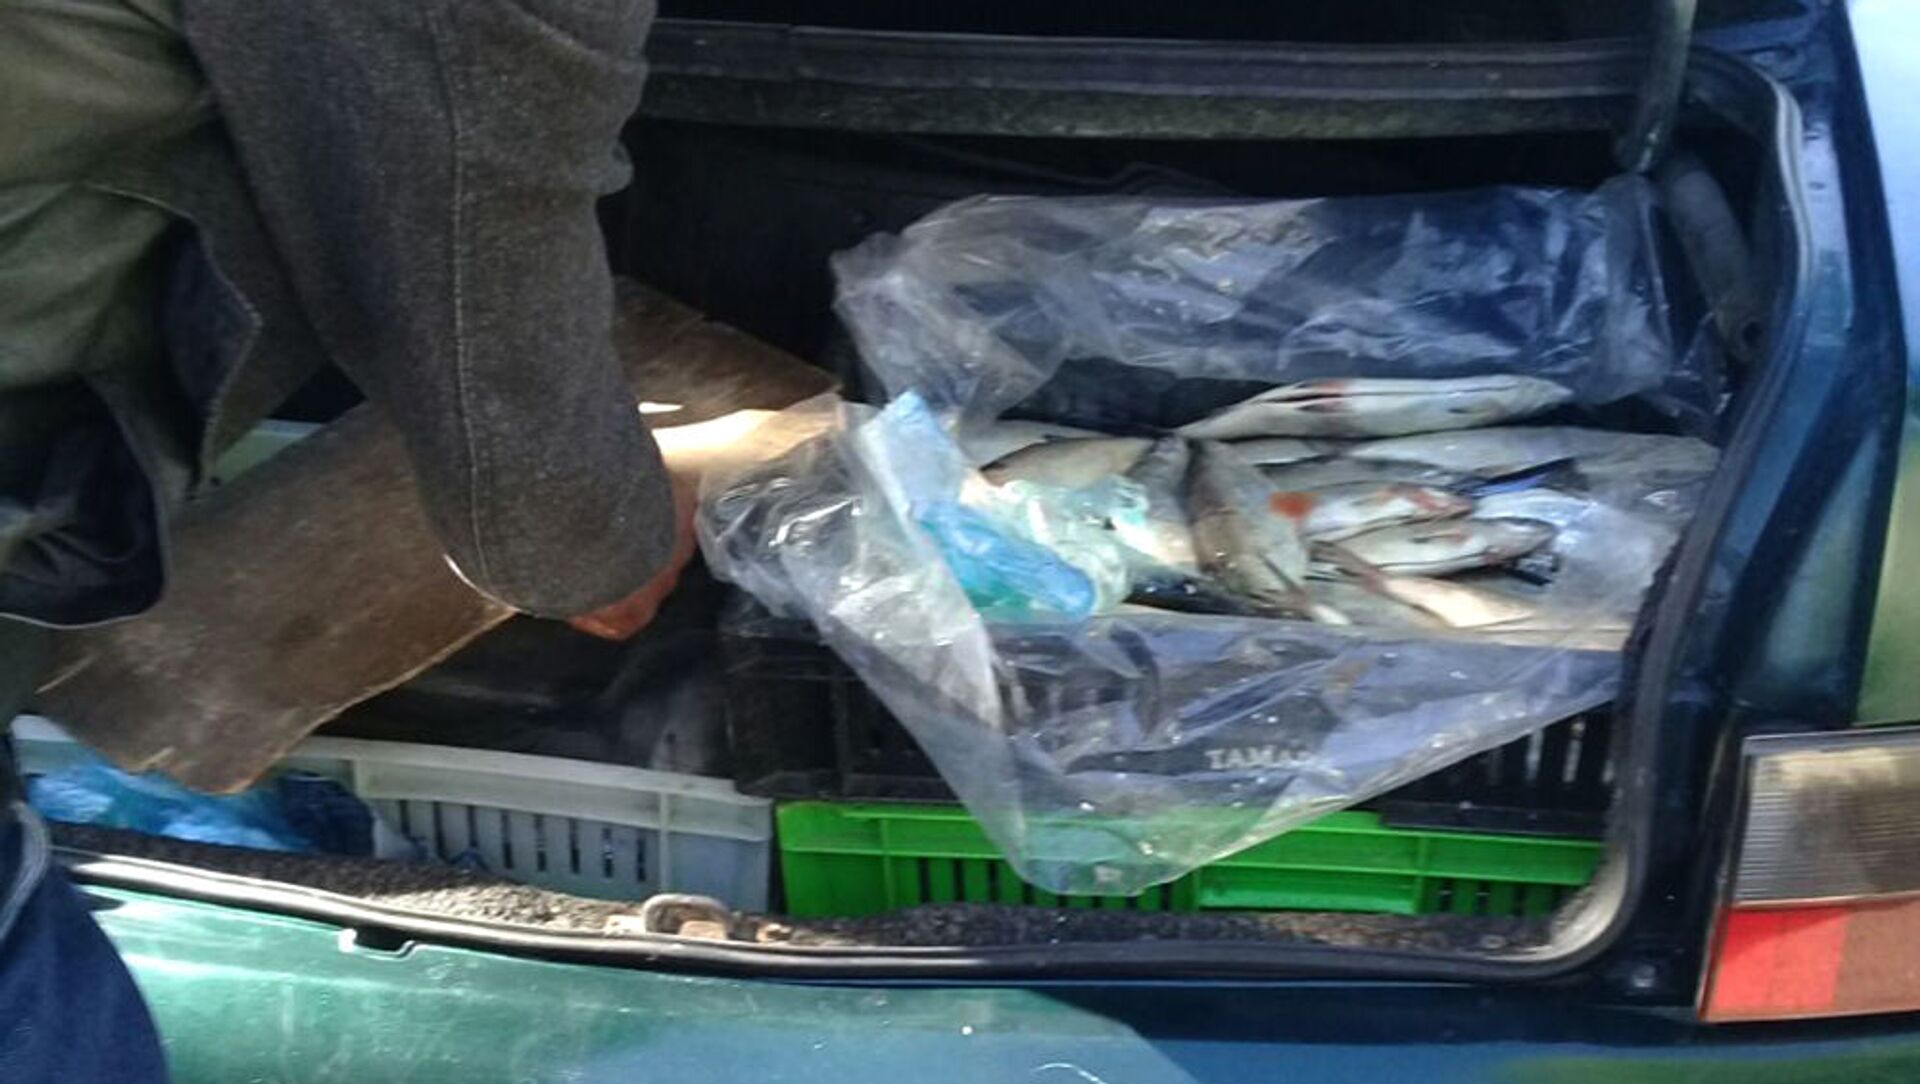 Незаконный улов рыбы в багажнике автомобиля - Sputnik Արմենիա, 1920, 04.06.2021